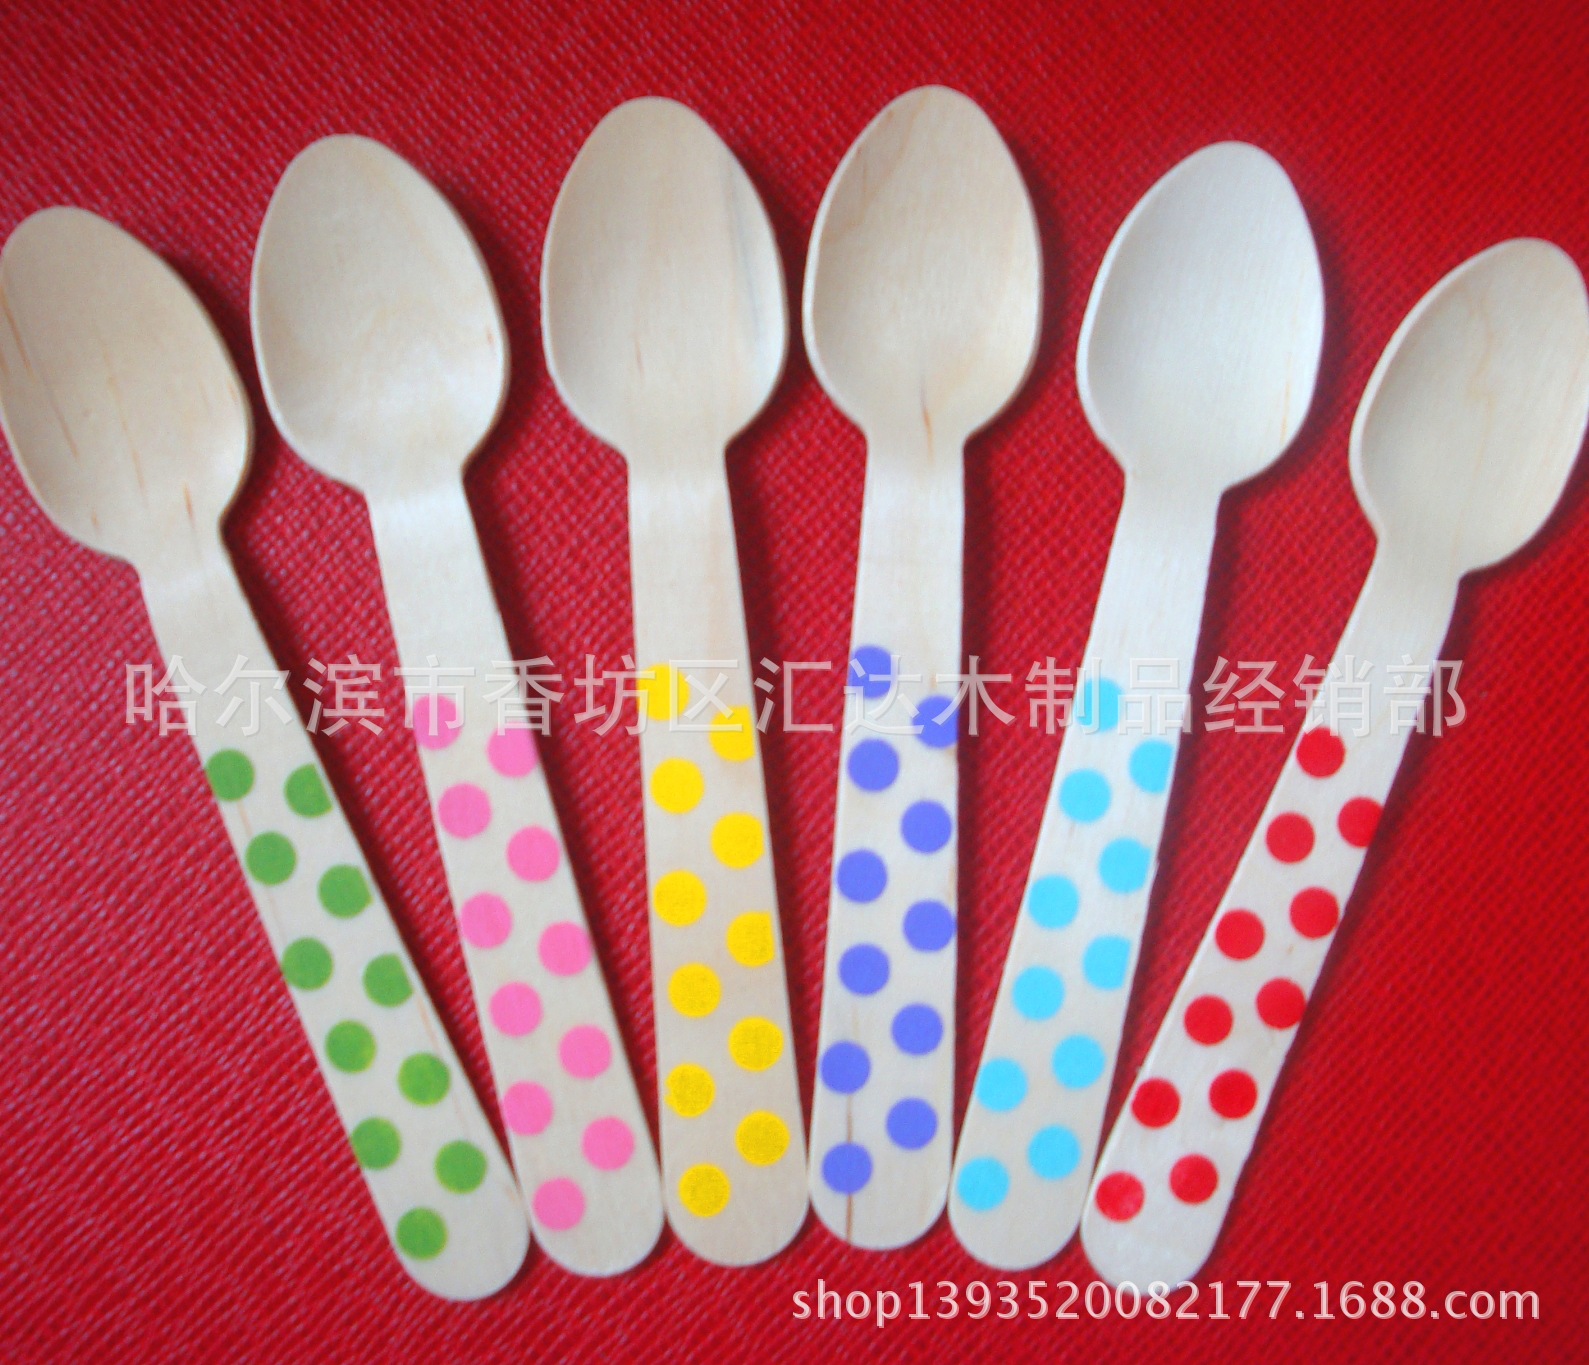 厂家供应木勺 彩色儿童木勺  木质木刀叉勺  一次性彩色木勺子图片